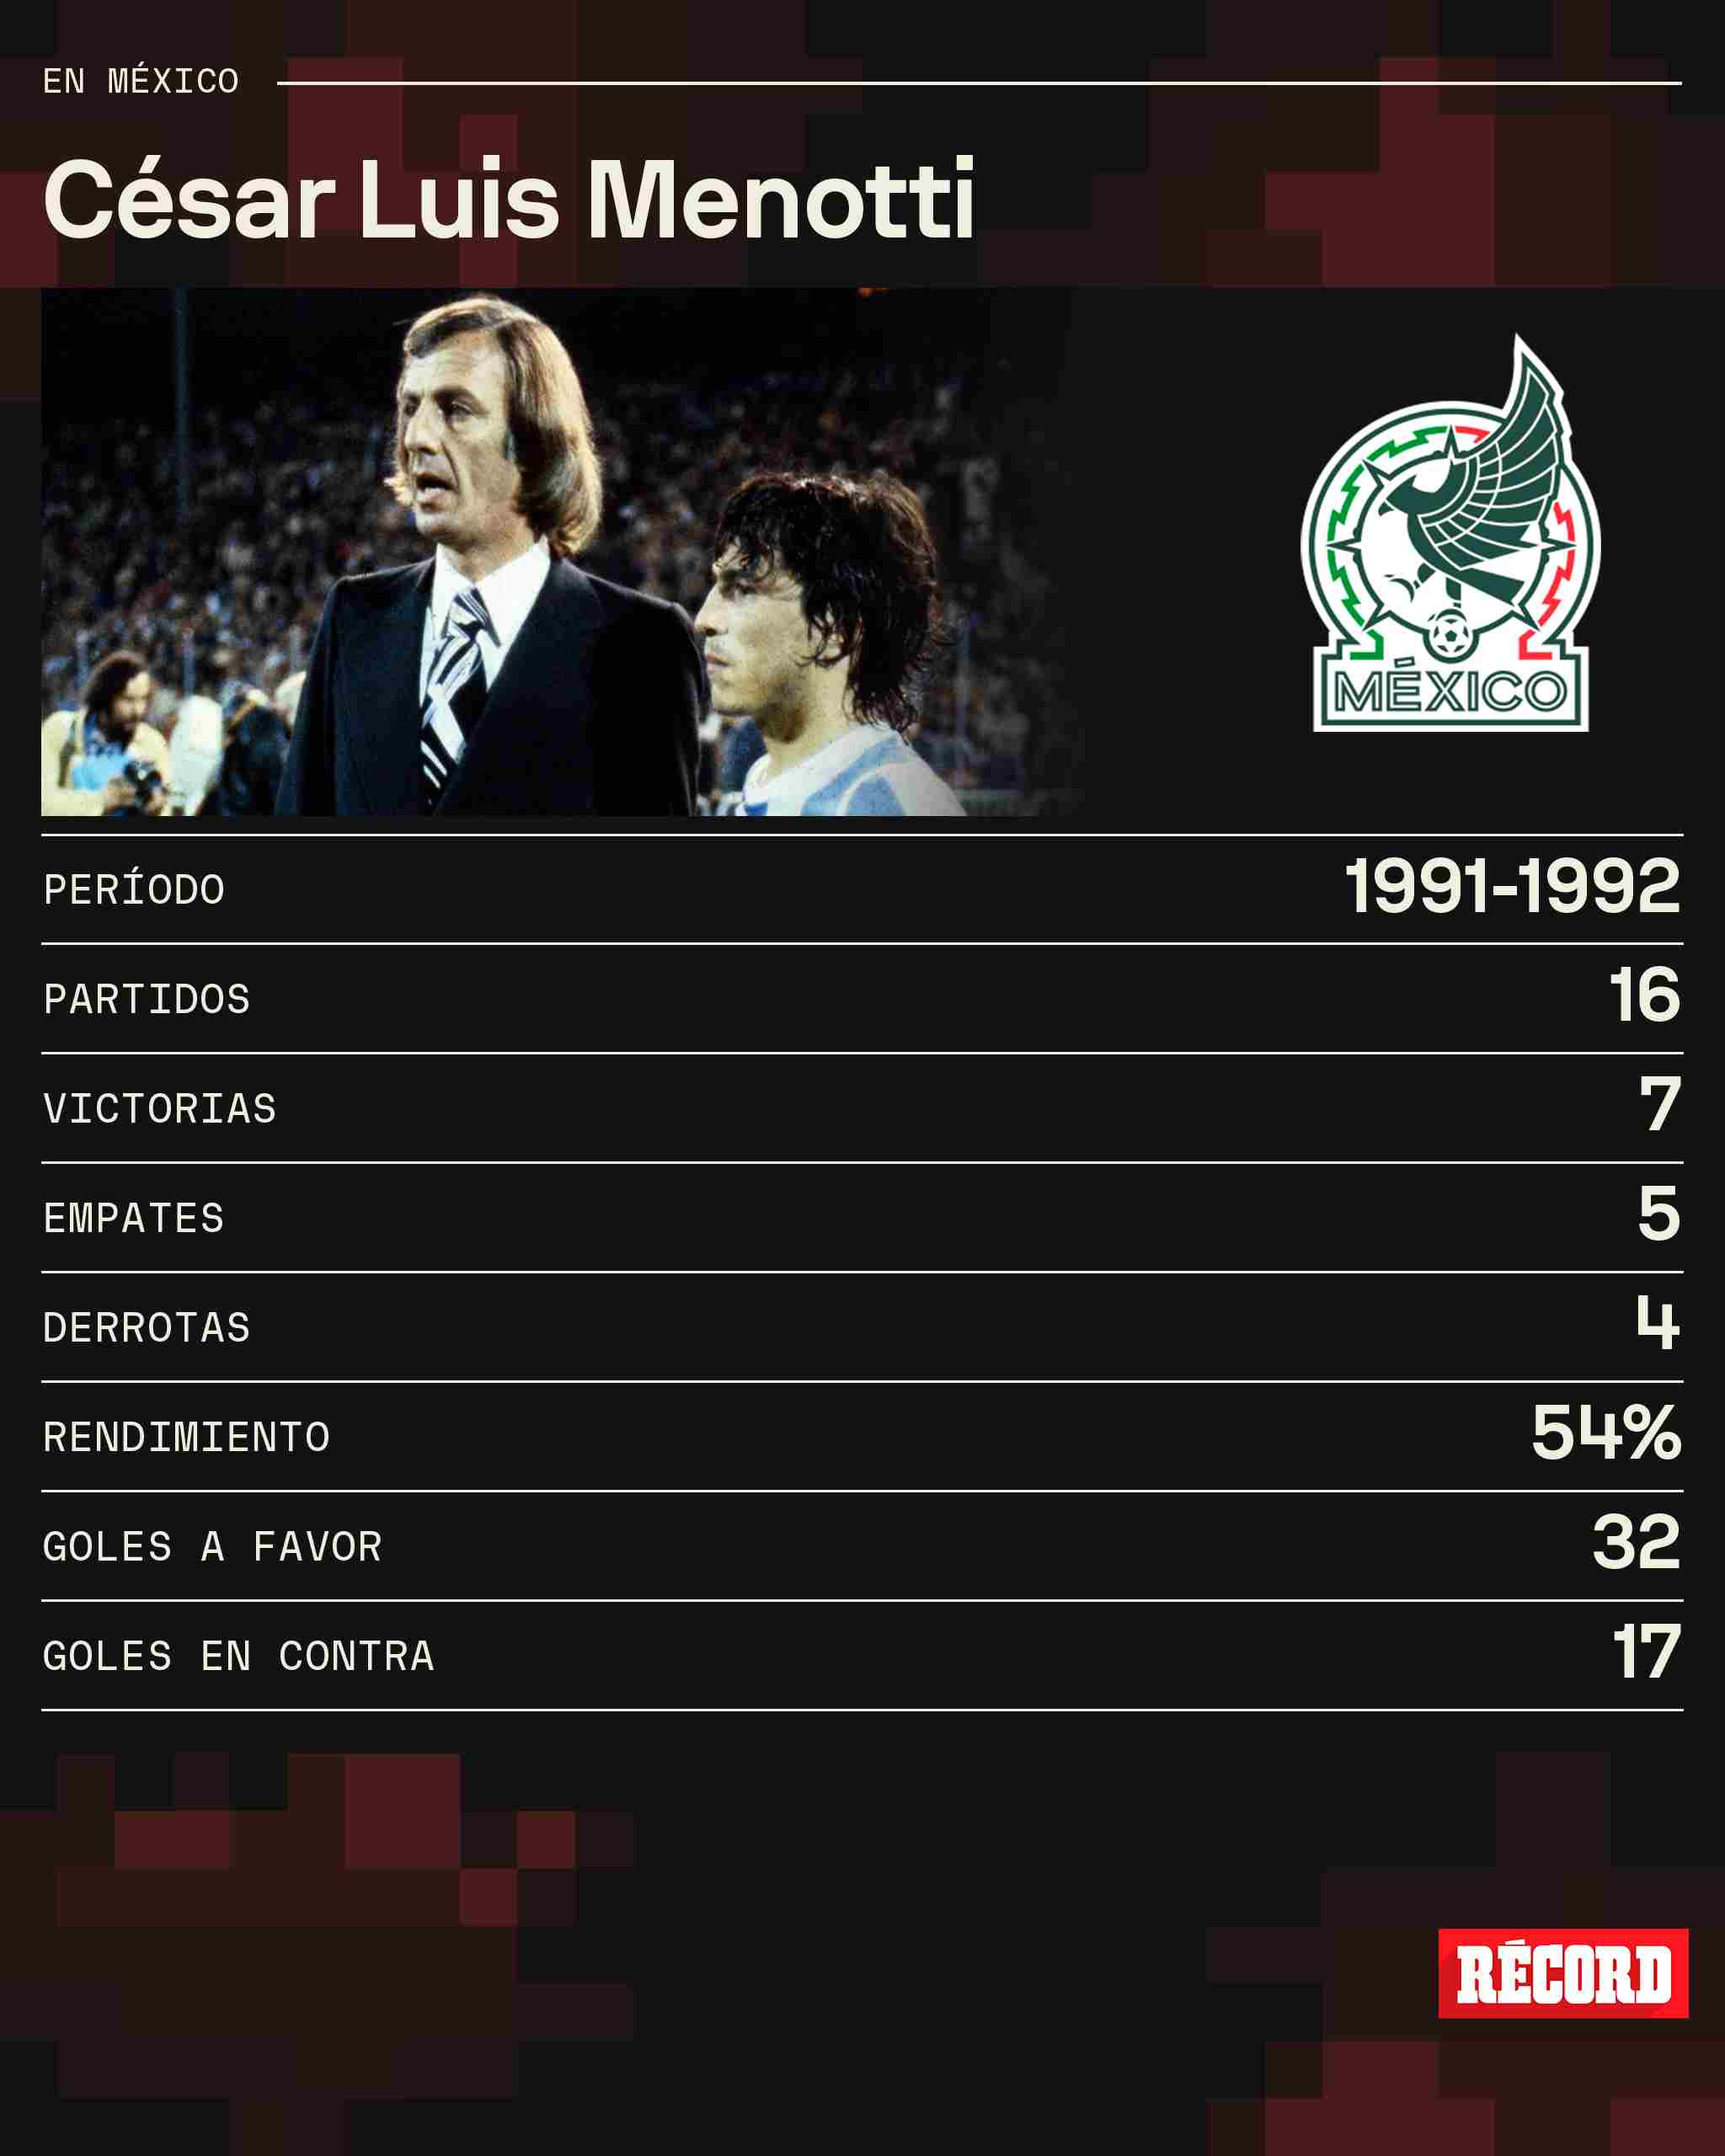 Estadísticas de Menotti en el Tricolor